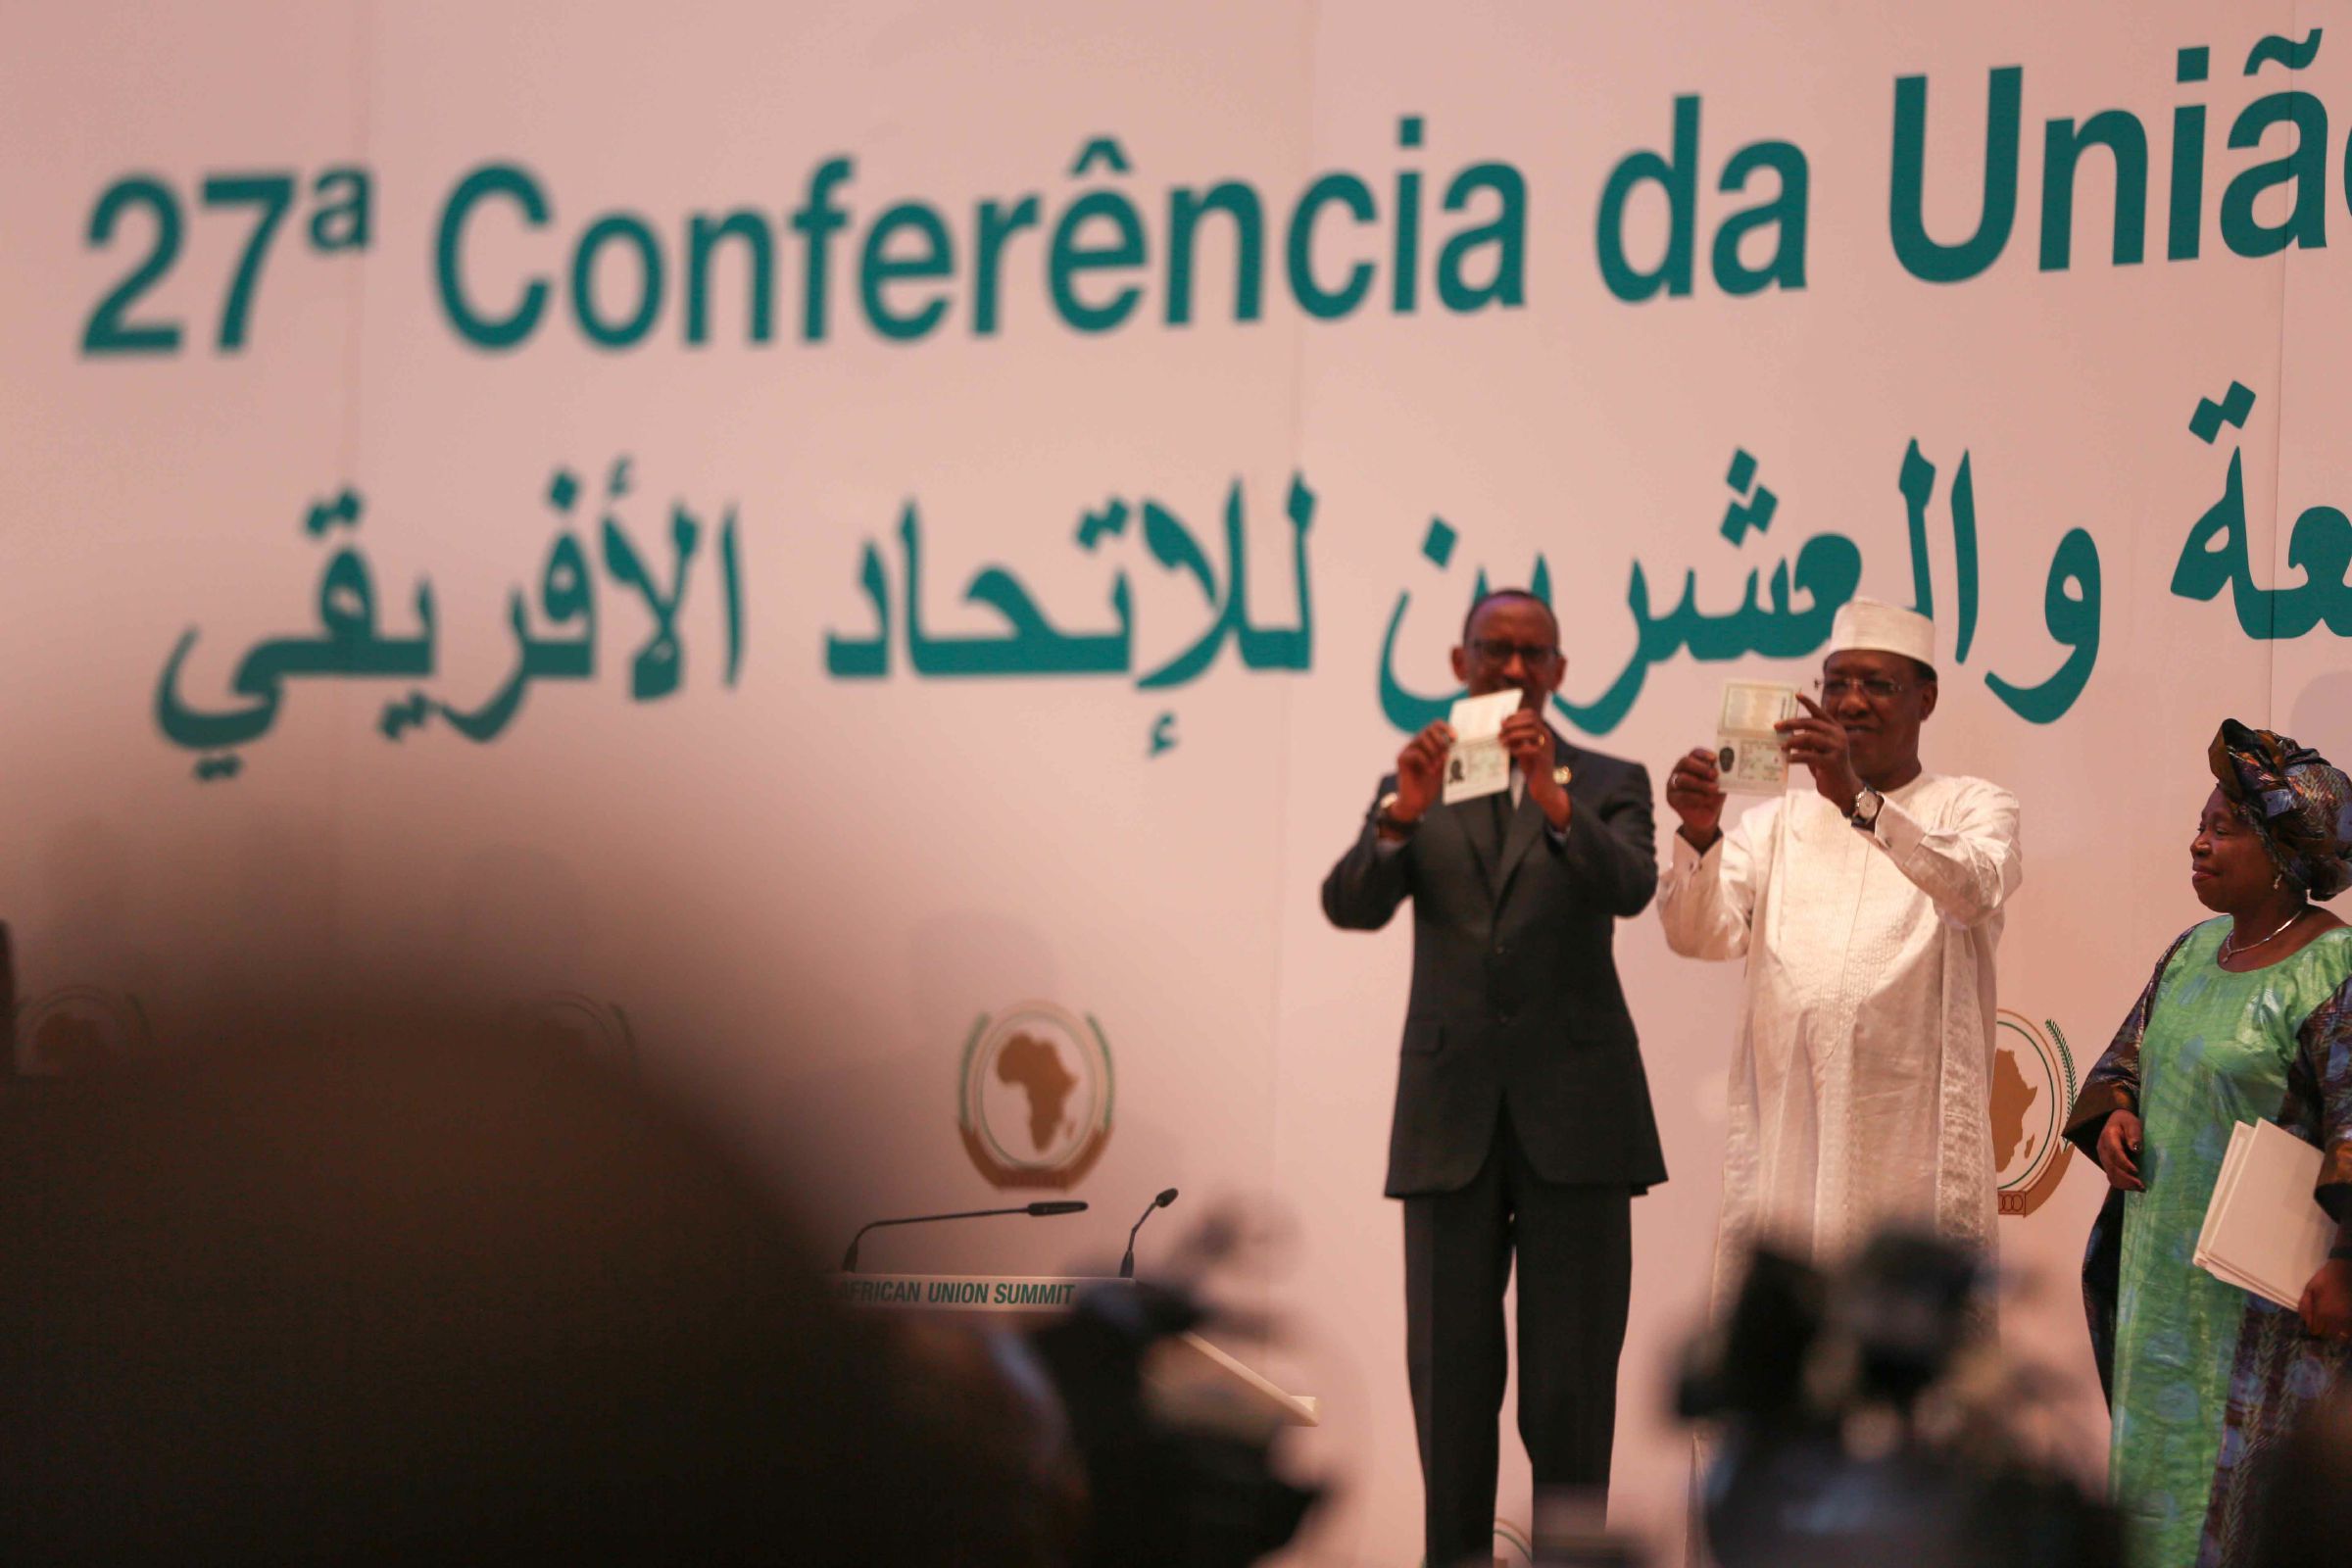 Quelques images du 27e sommet des chefs d'Etat de l'UA à Kigali au Rwanda